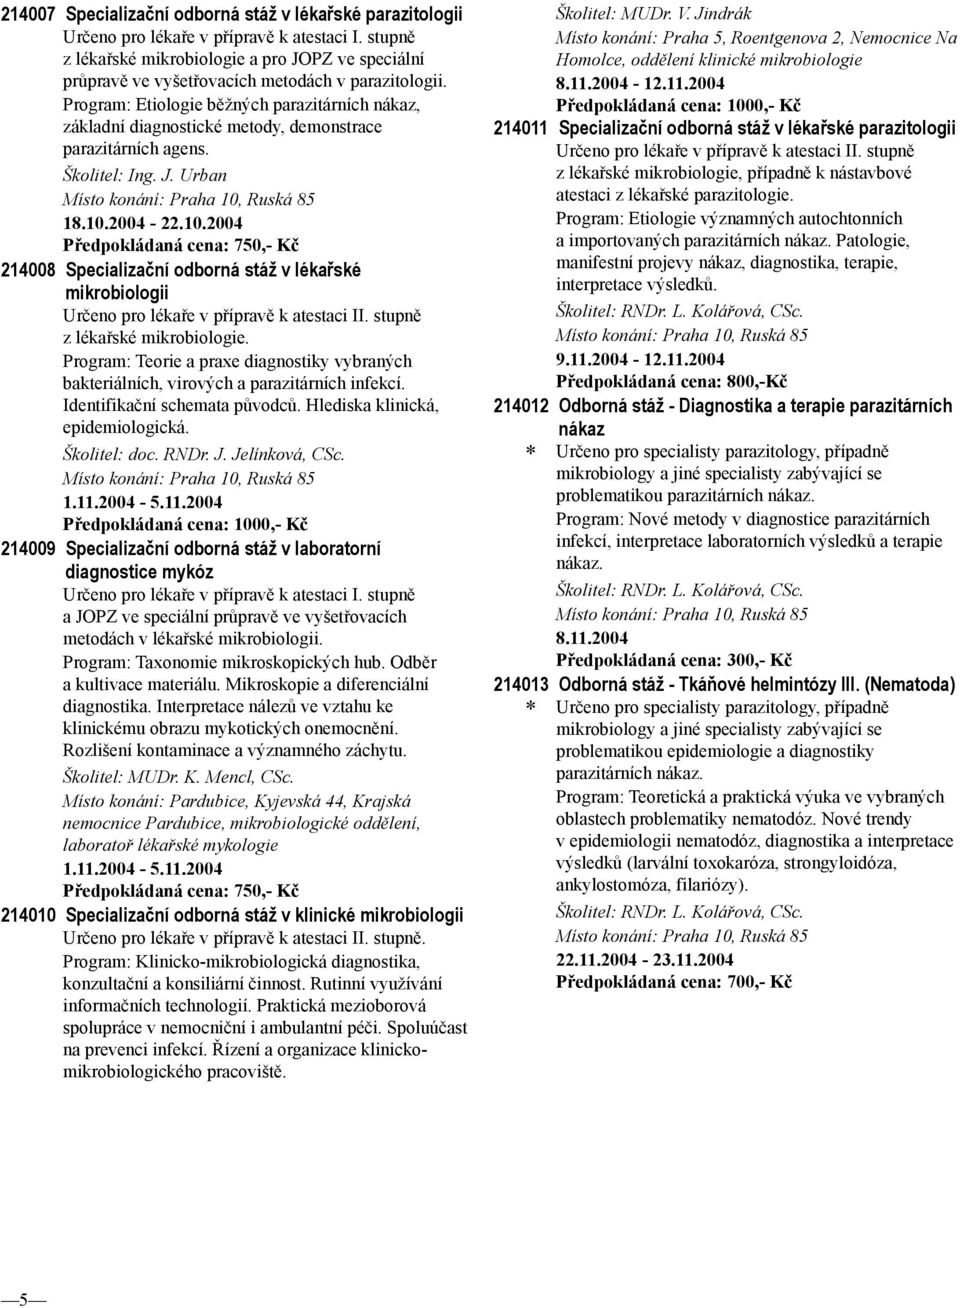 Program: Etiologie běžných parazitárních nákaz, základní diagnostické metody, demonstrace parazitárních agens. Školitel: Ing. J. Urban 18.10.